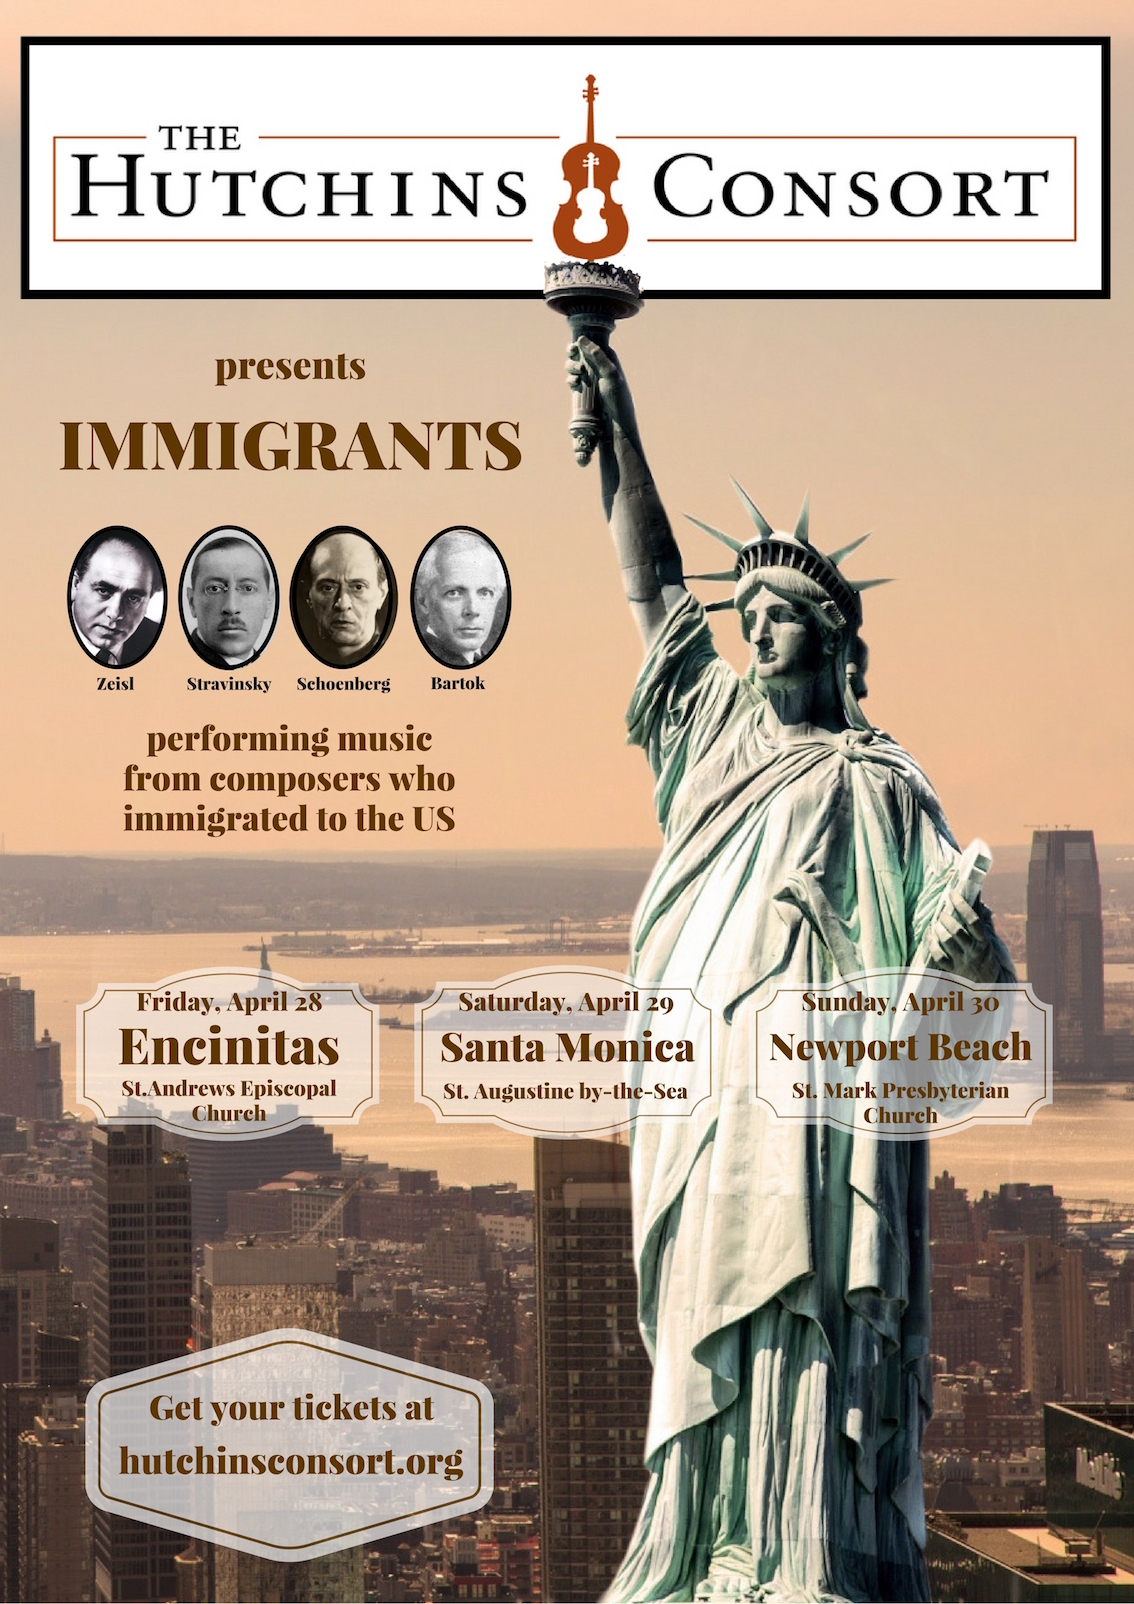 The Hutchins Consort presents: Immigrants